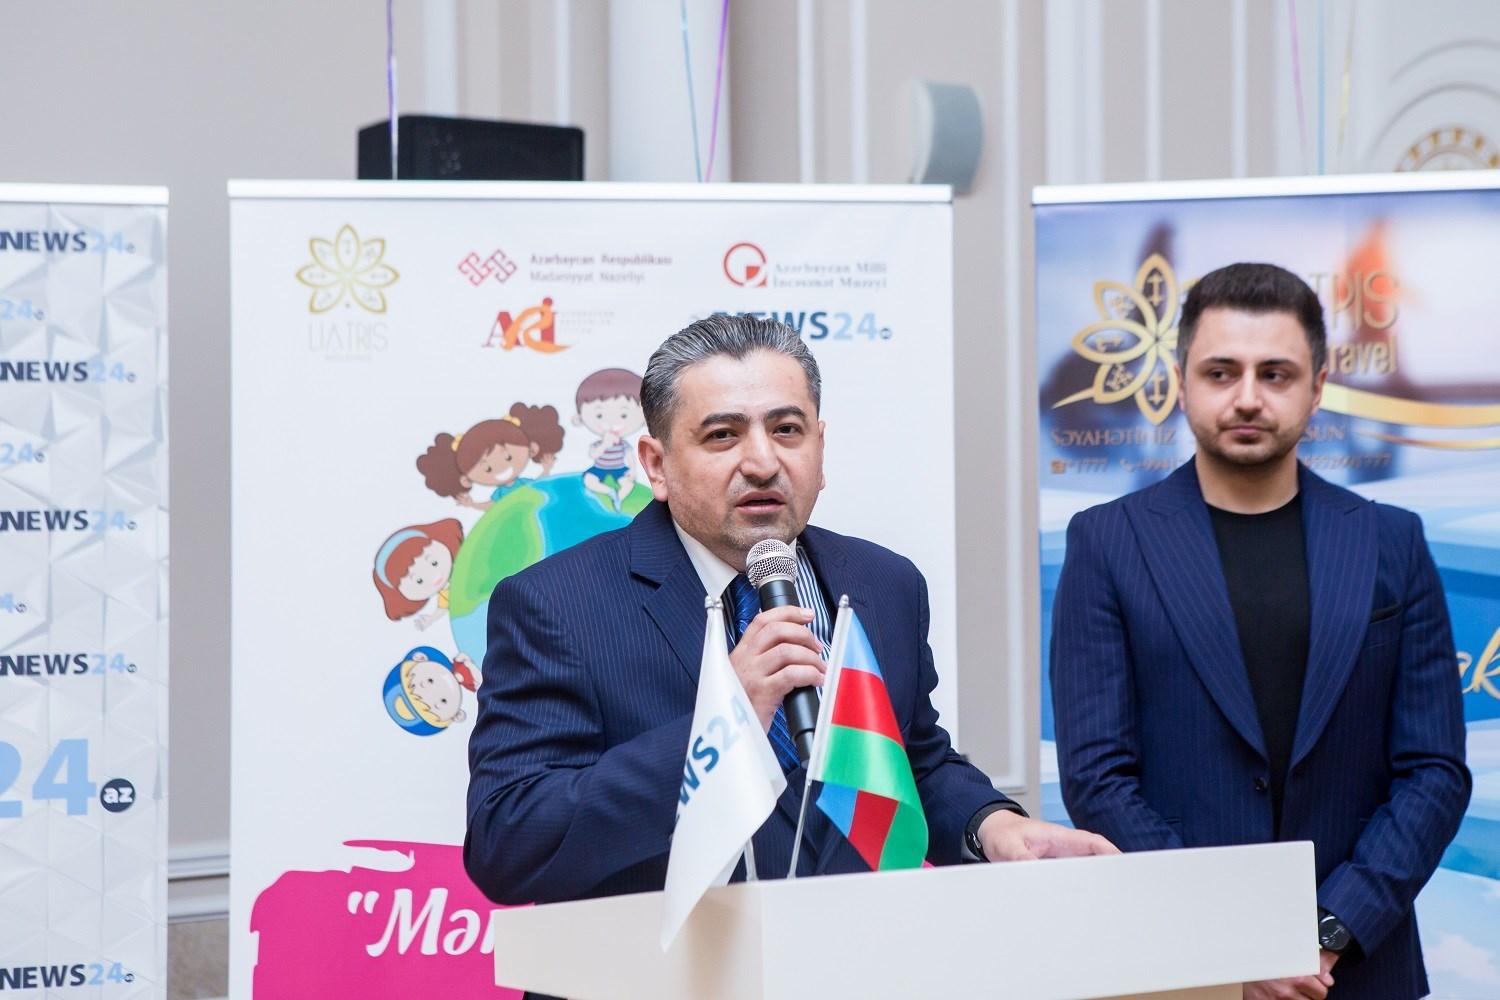 В Баку определены победители конкурса "Нарисуй мне этот мир" (ФОТО)